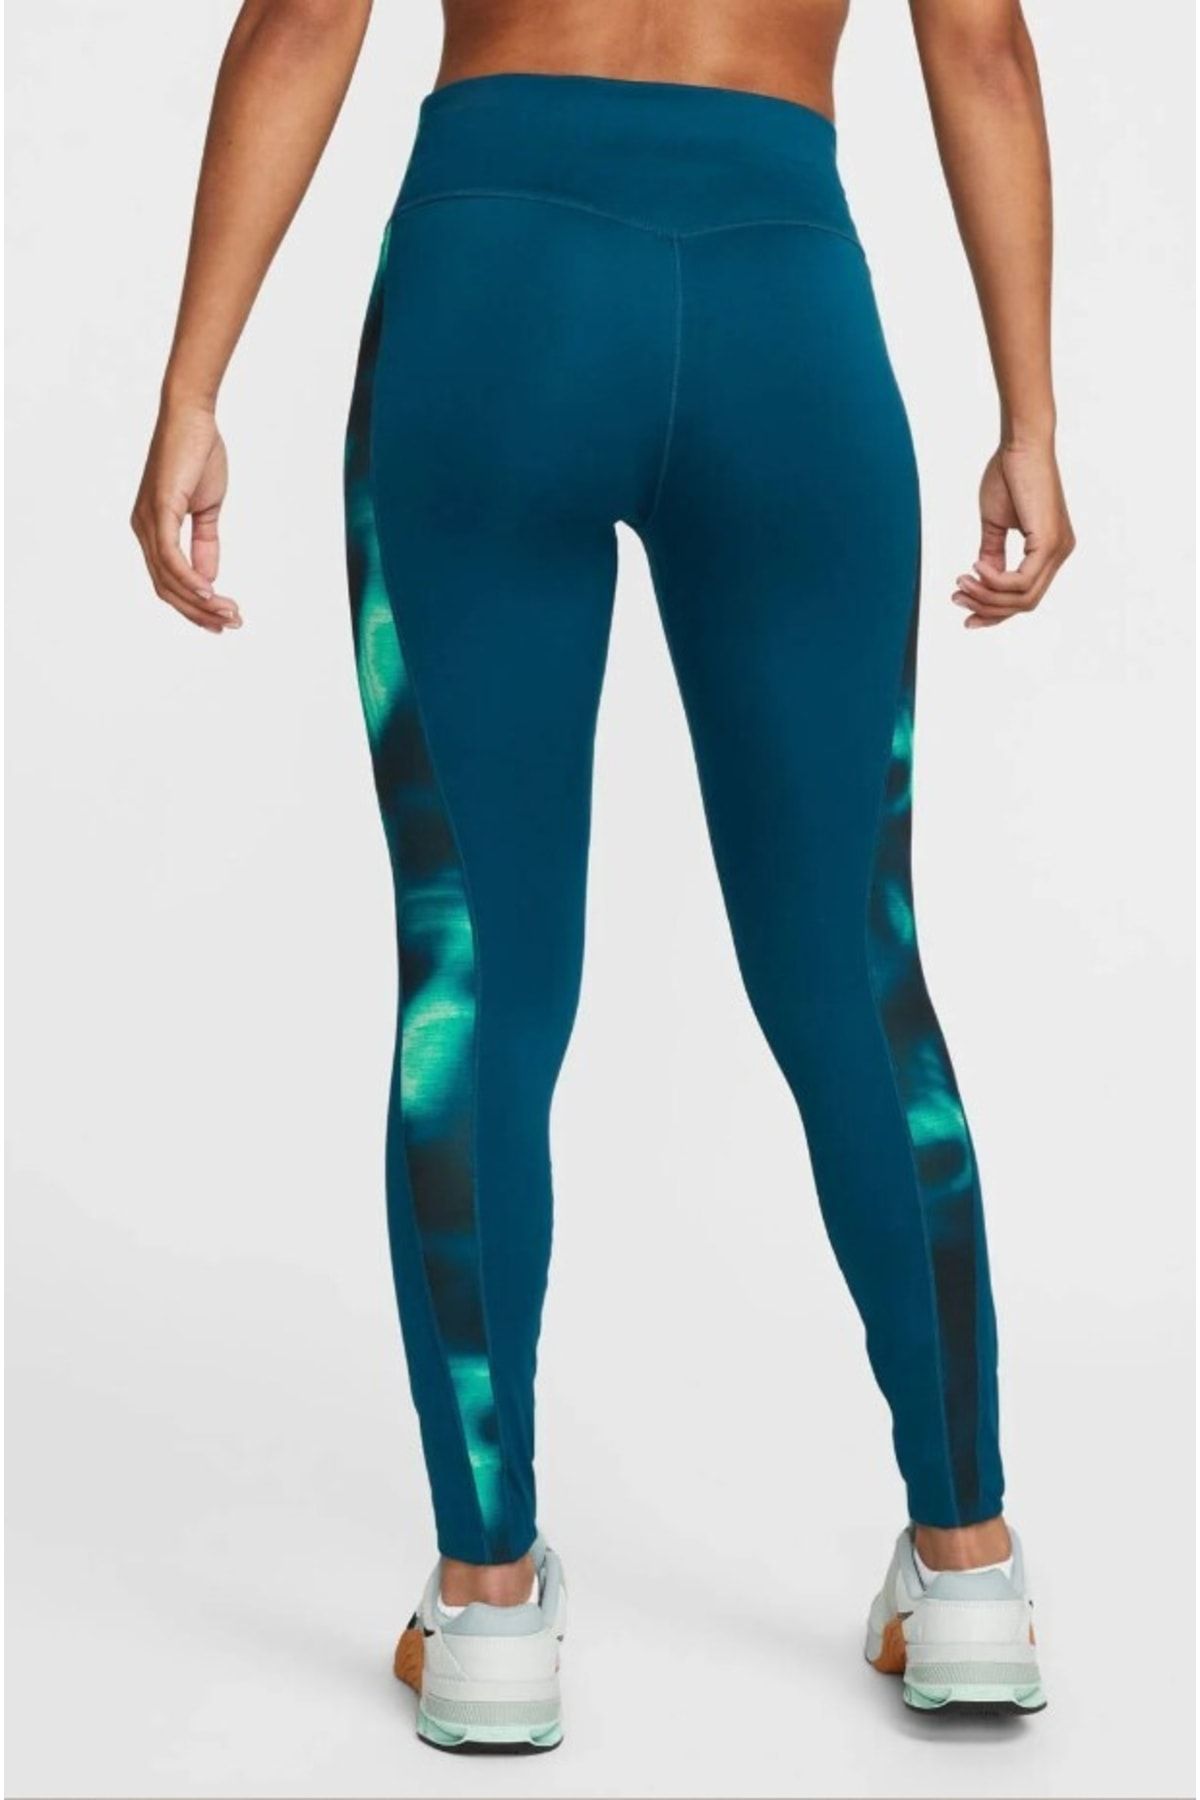 Nike One Women's Icon Clash Blue/Black Print 7/8 Leggings (DC5276-447) S/L/XL